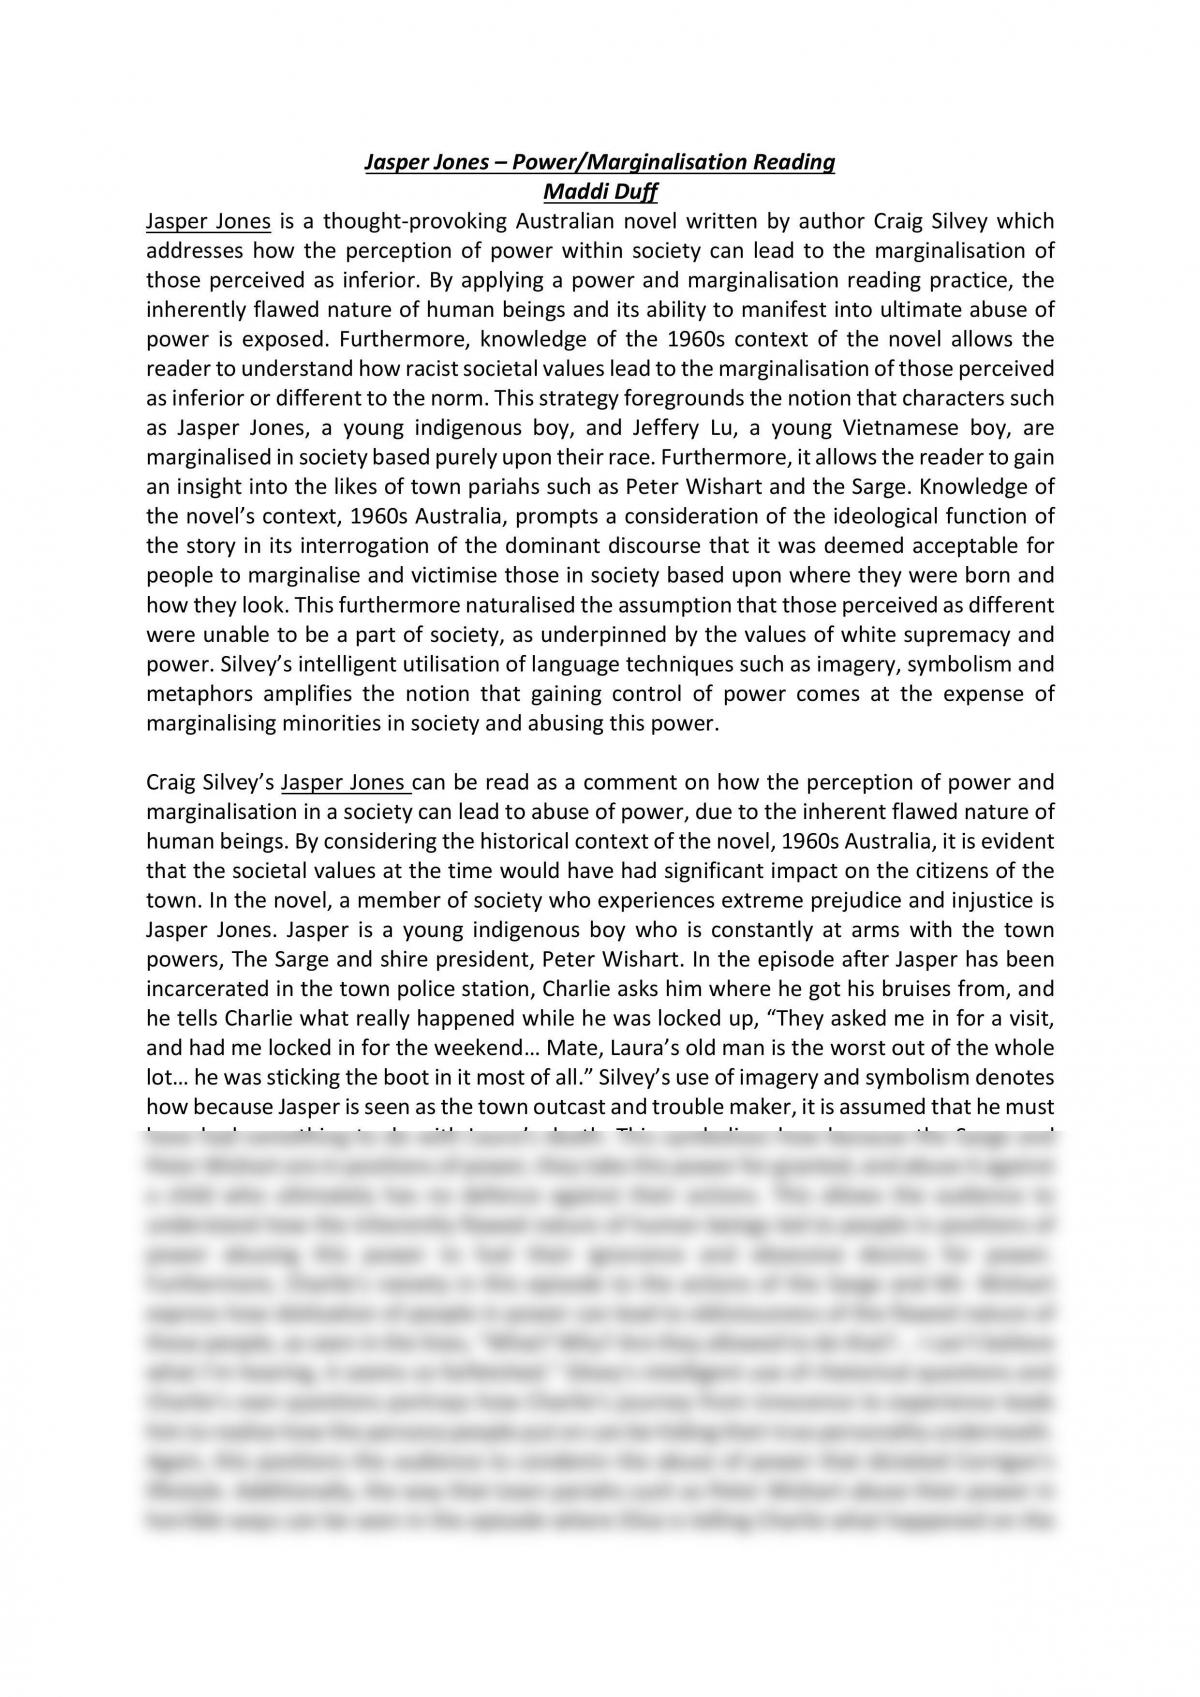 thesis statement jasper jones